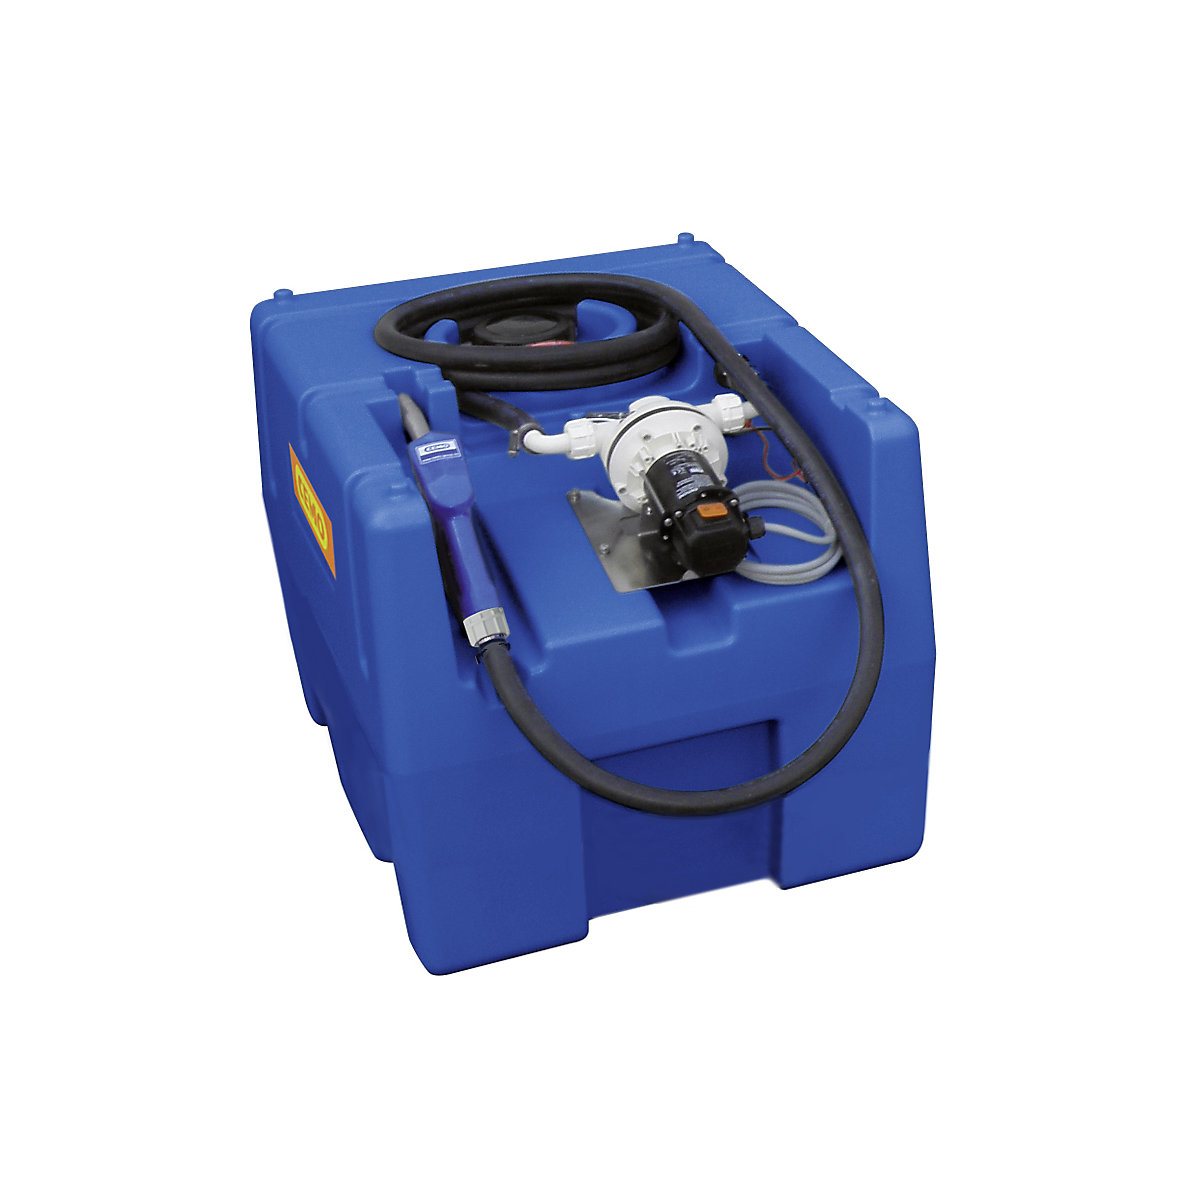 Réservoir pour AUS 32 (AdBlue®) – CEMO, capacité 200 l, avec clapet automatique, pompe électrique 24 V, largeur 600 mm-2